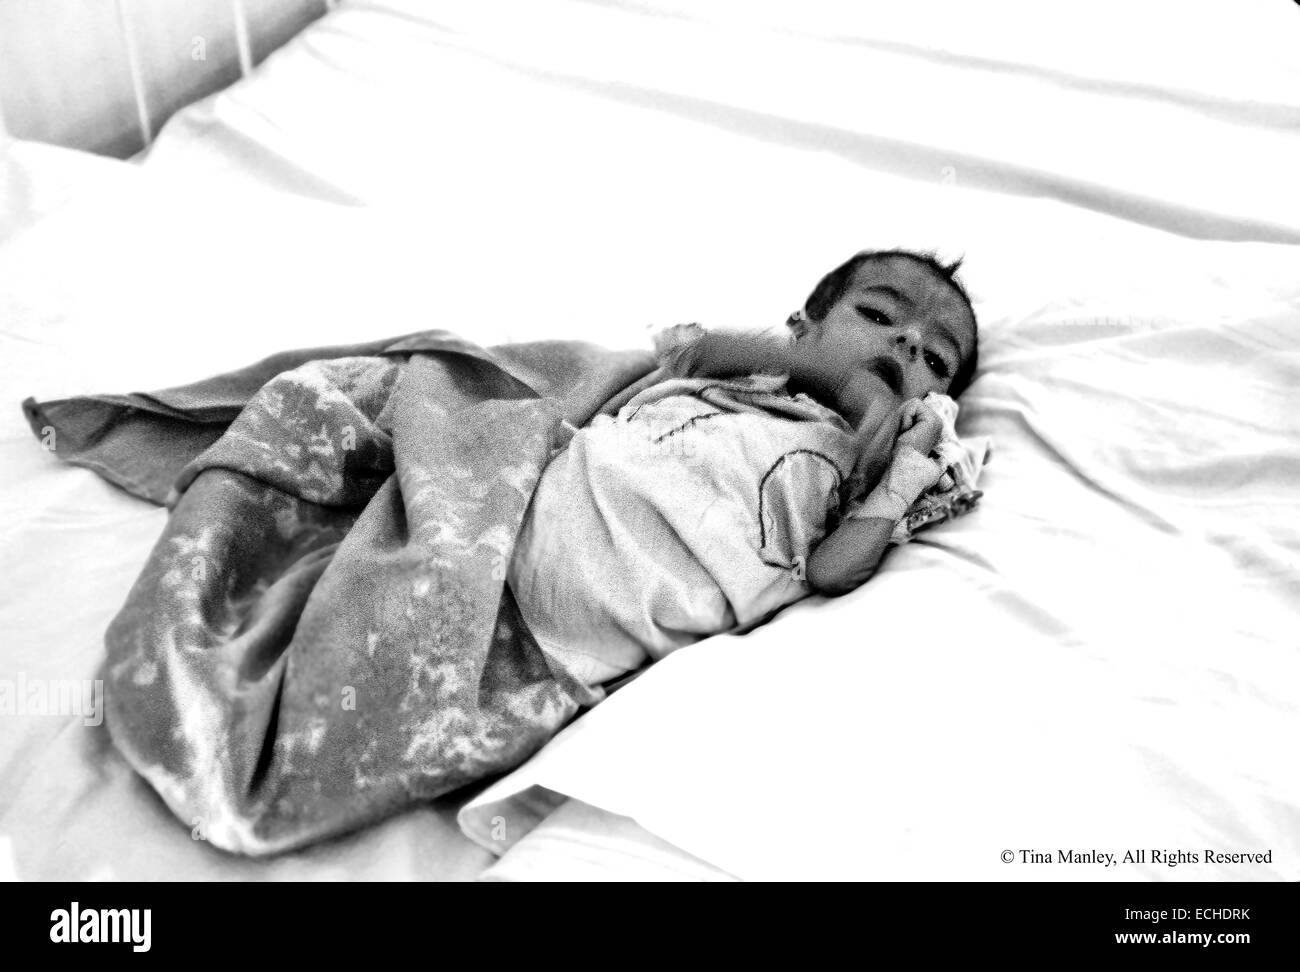 Malnutrition Et Deshydratation Bebe Dans L Alwya Hopital Pour Enfants A Bagdad Iraq Plus De Bebes Souffrent De Diarrhee Parce Que Le Traitement De L Eau A Ete Detruit Dans La Guerre Du Golfe